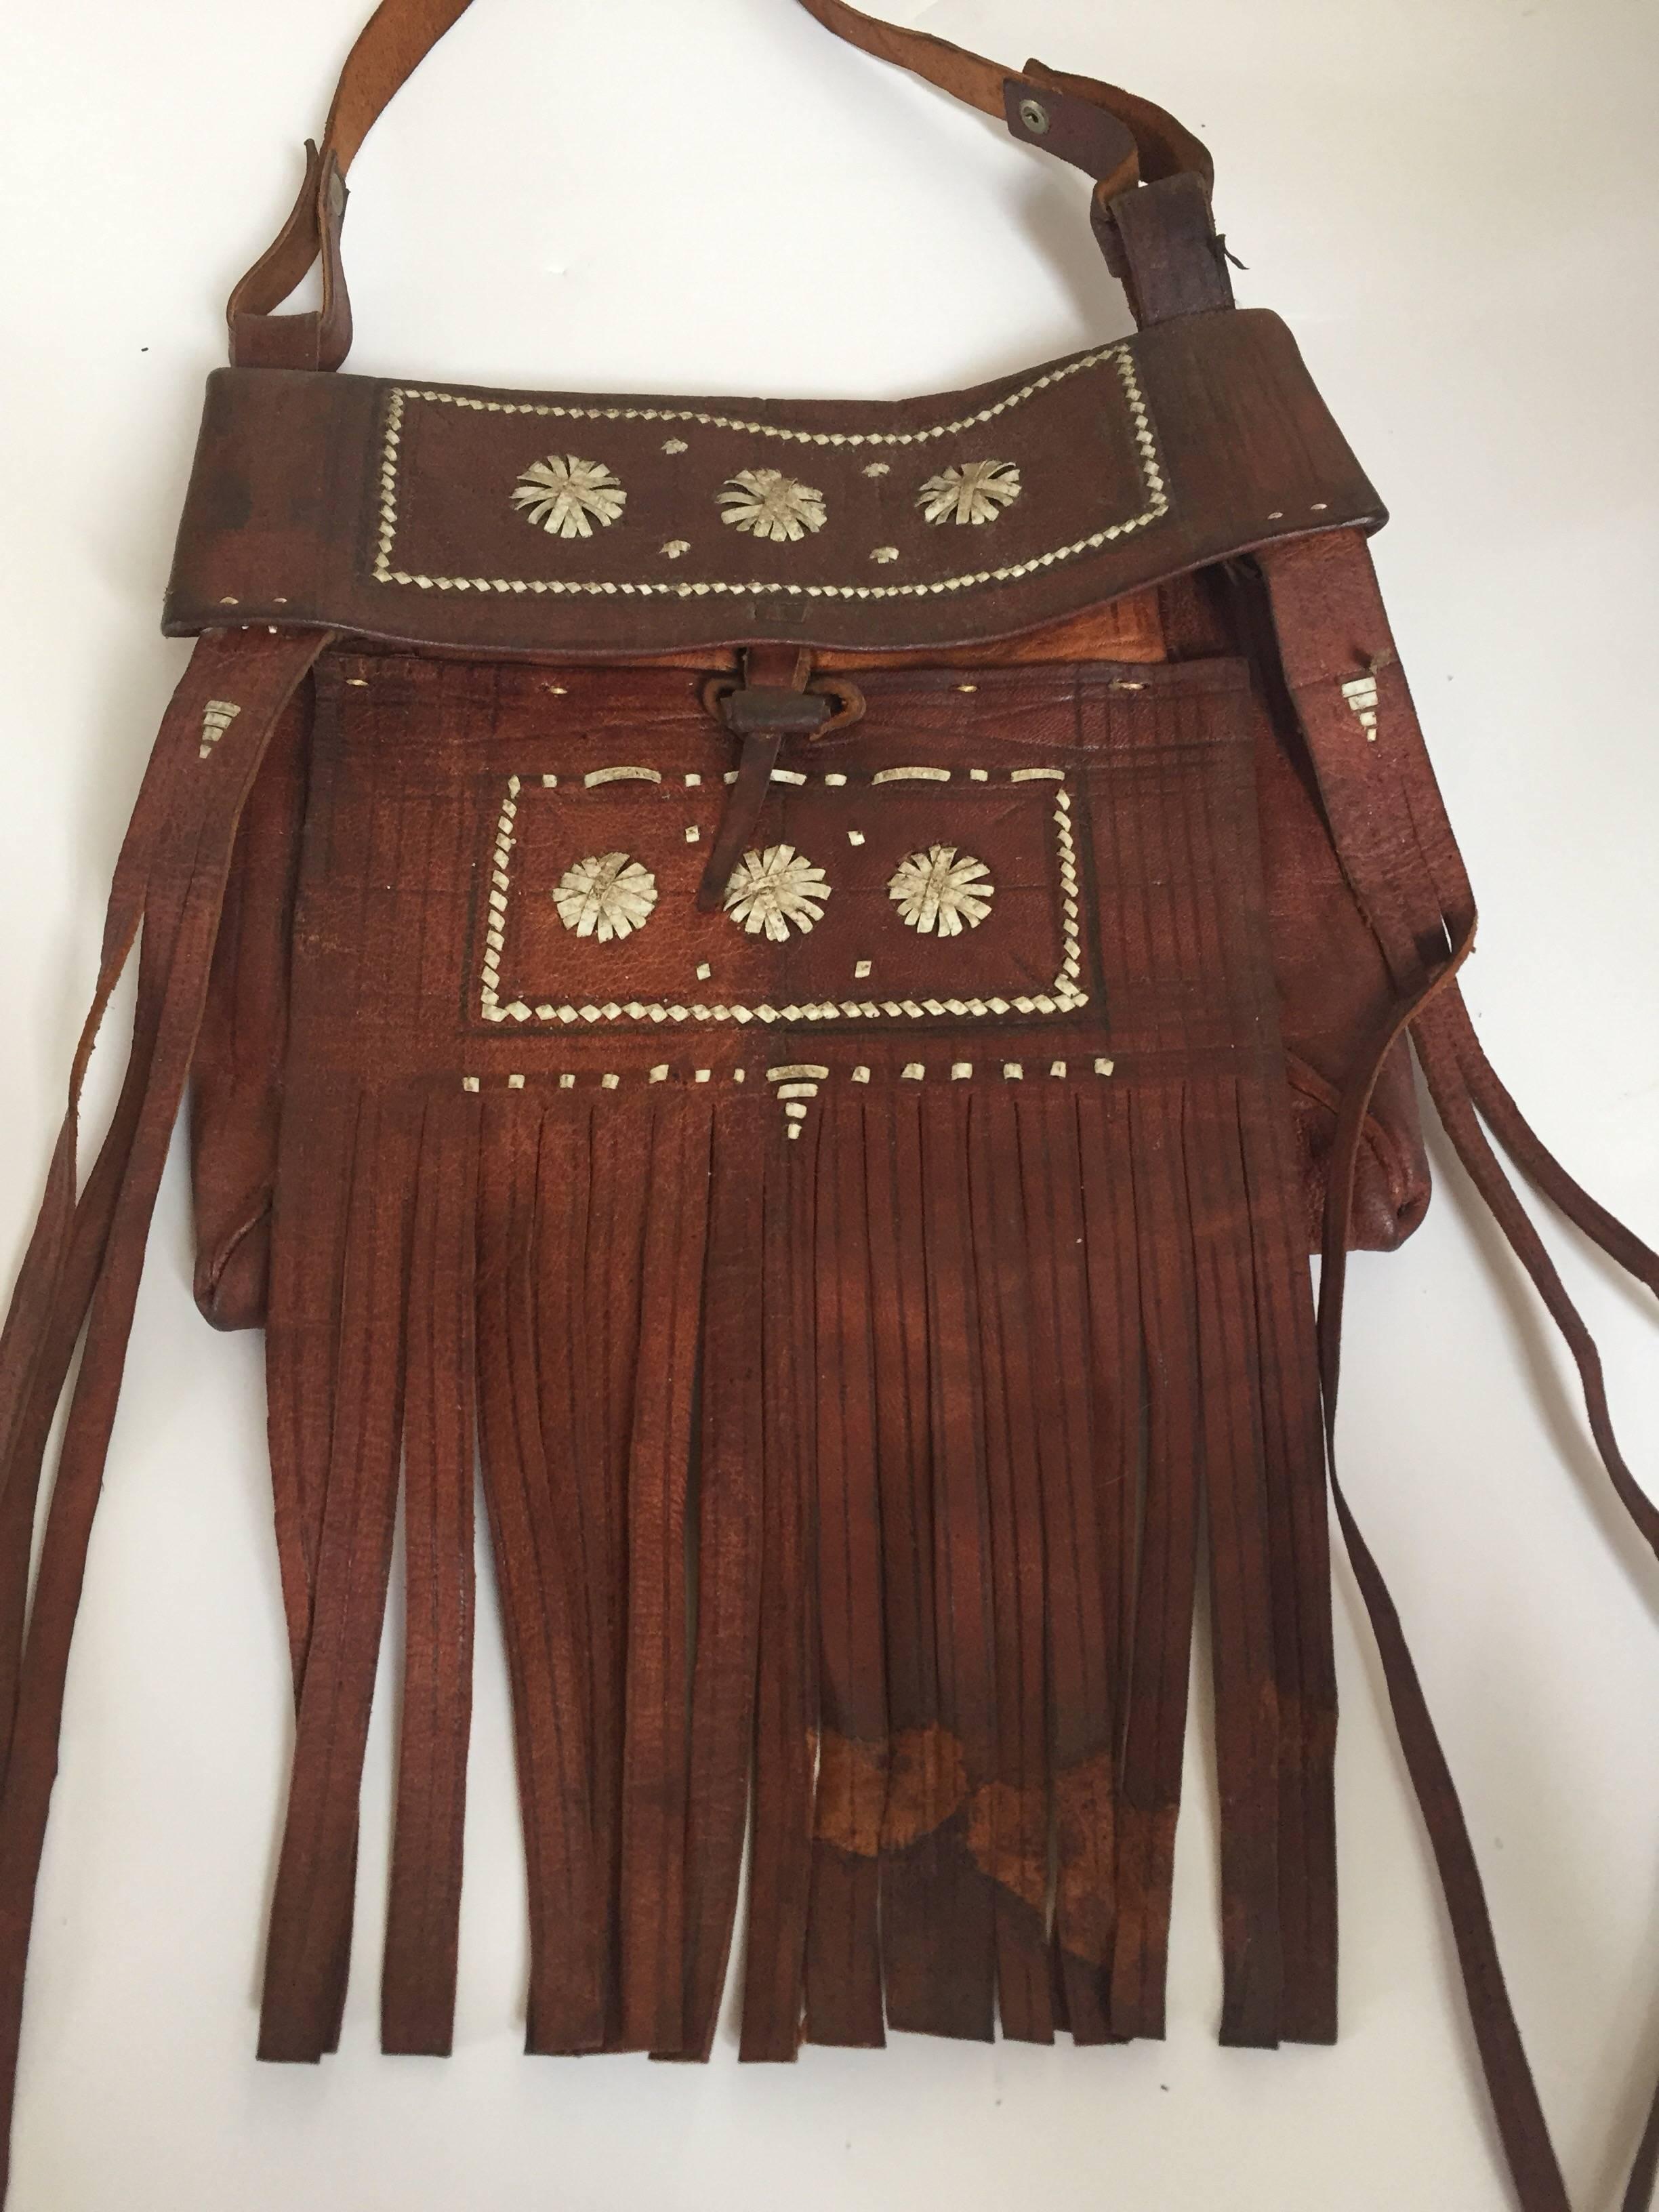 Vintage 1970er Jahre afrikanischen marokkanischen Leder handgefertigt Tuareg Tasche mit Fransen.
Authentisches Kunstwerk, das von den Berberstämmen Marokkos handgefertigt wurde.
Eng gewebte bunte Lederstreifen bilden ein kompliziertes geometrisches